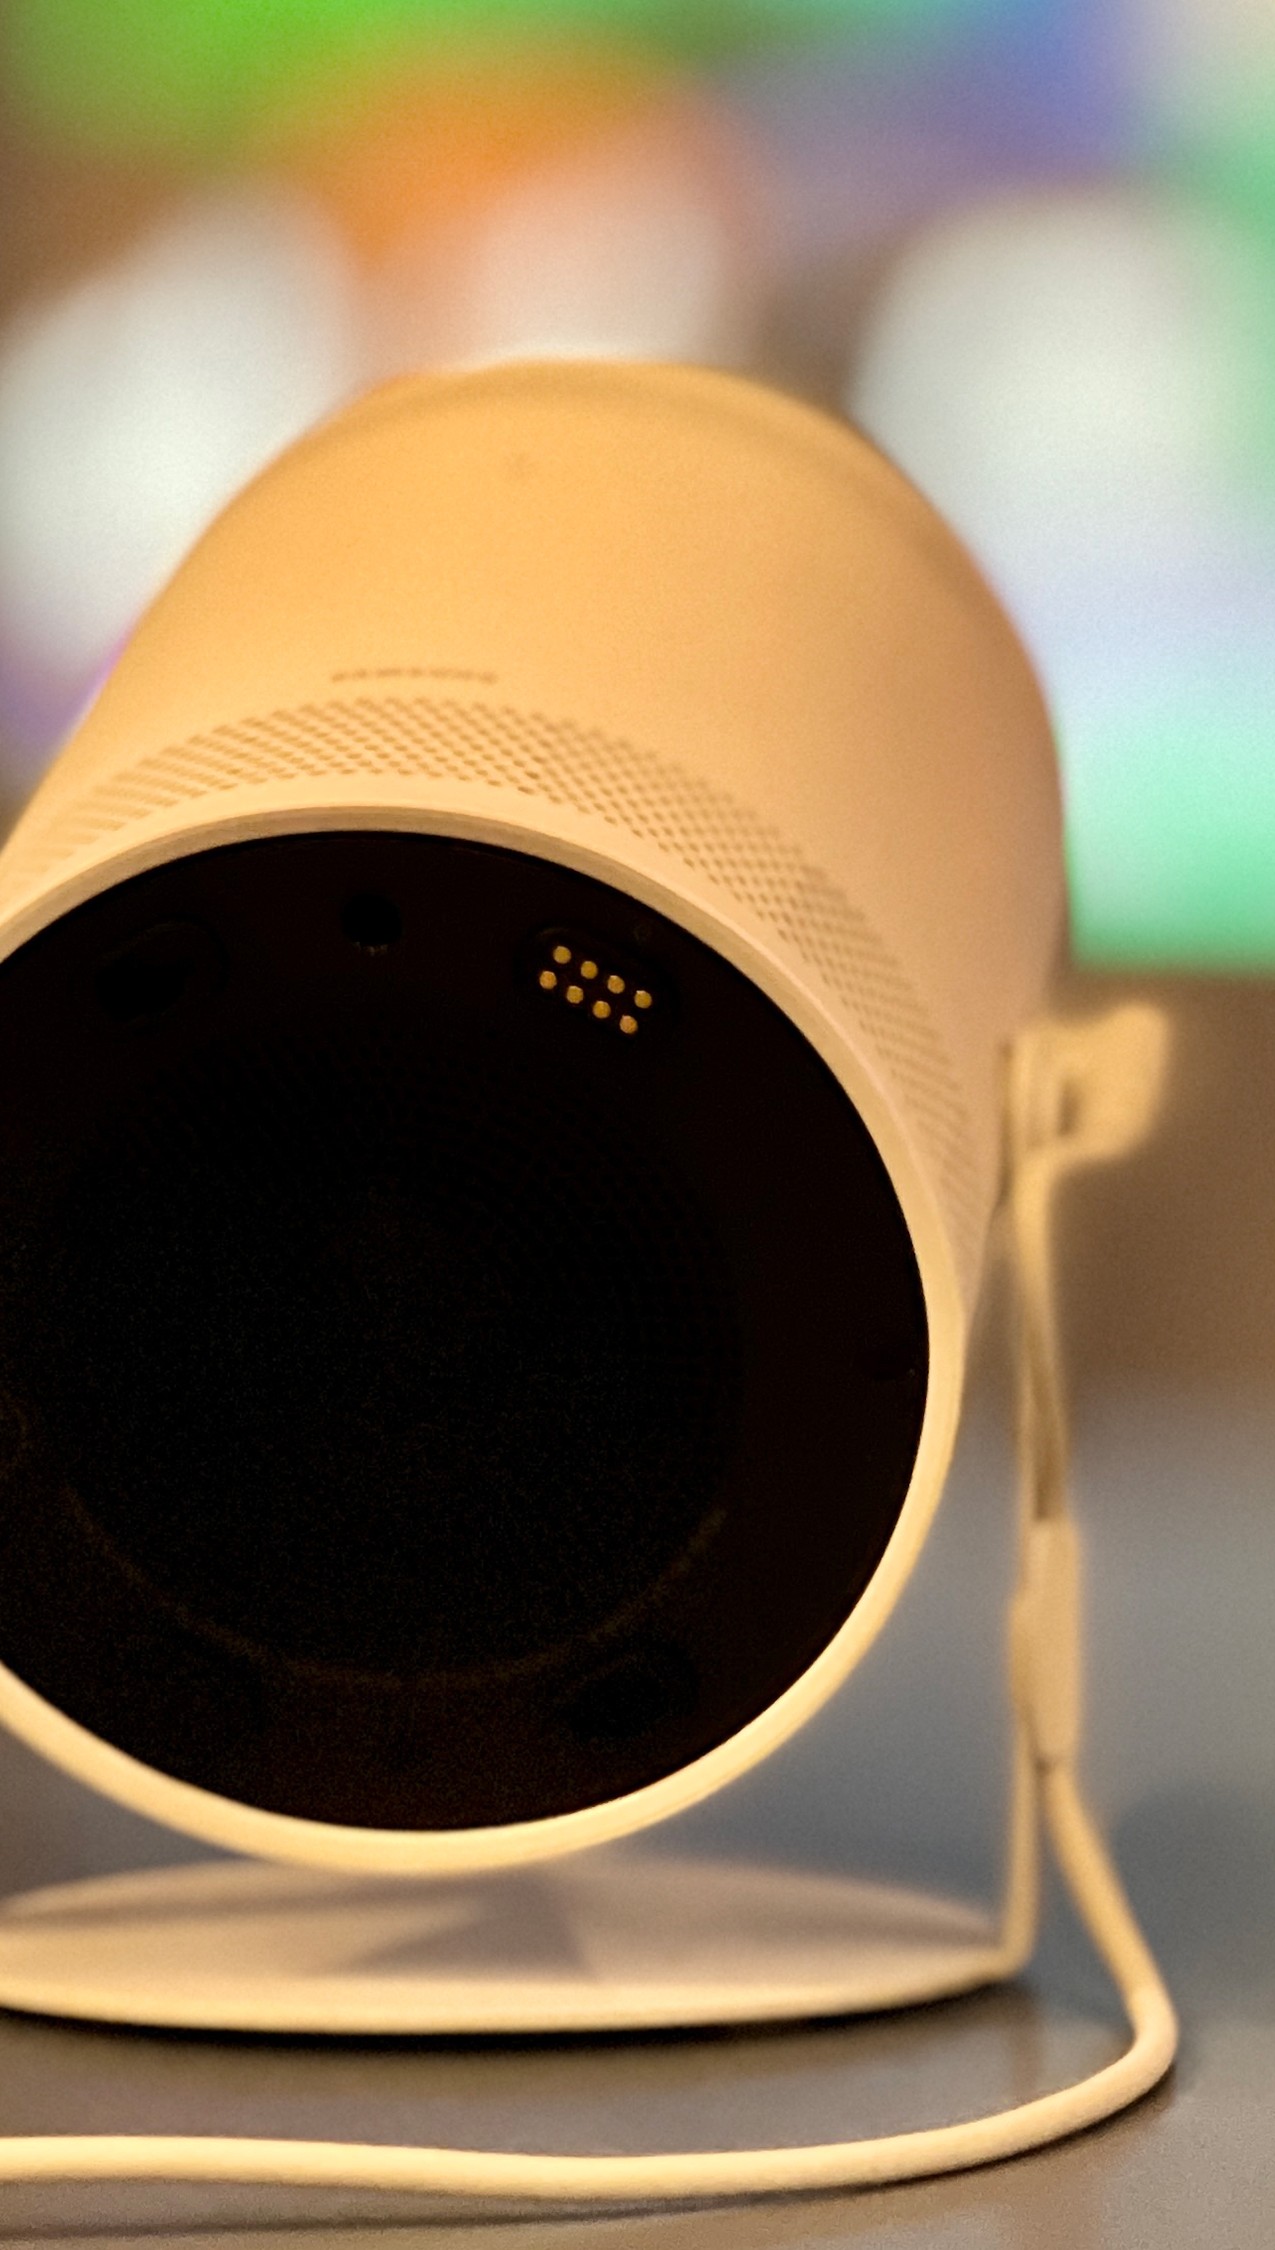 Veja 4 curiosidades do Freestyle, o novo projetor portátil da Samsung